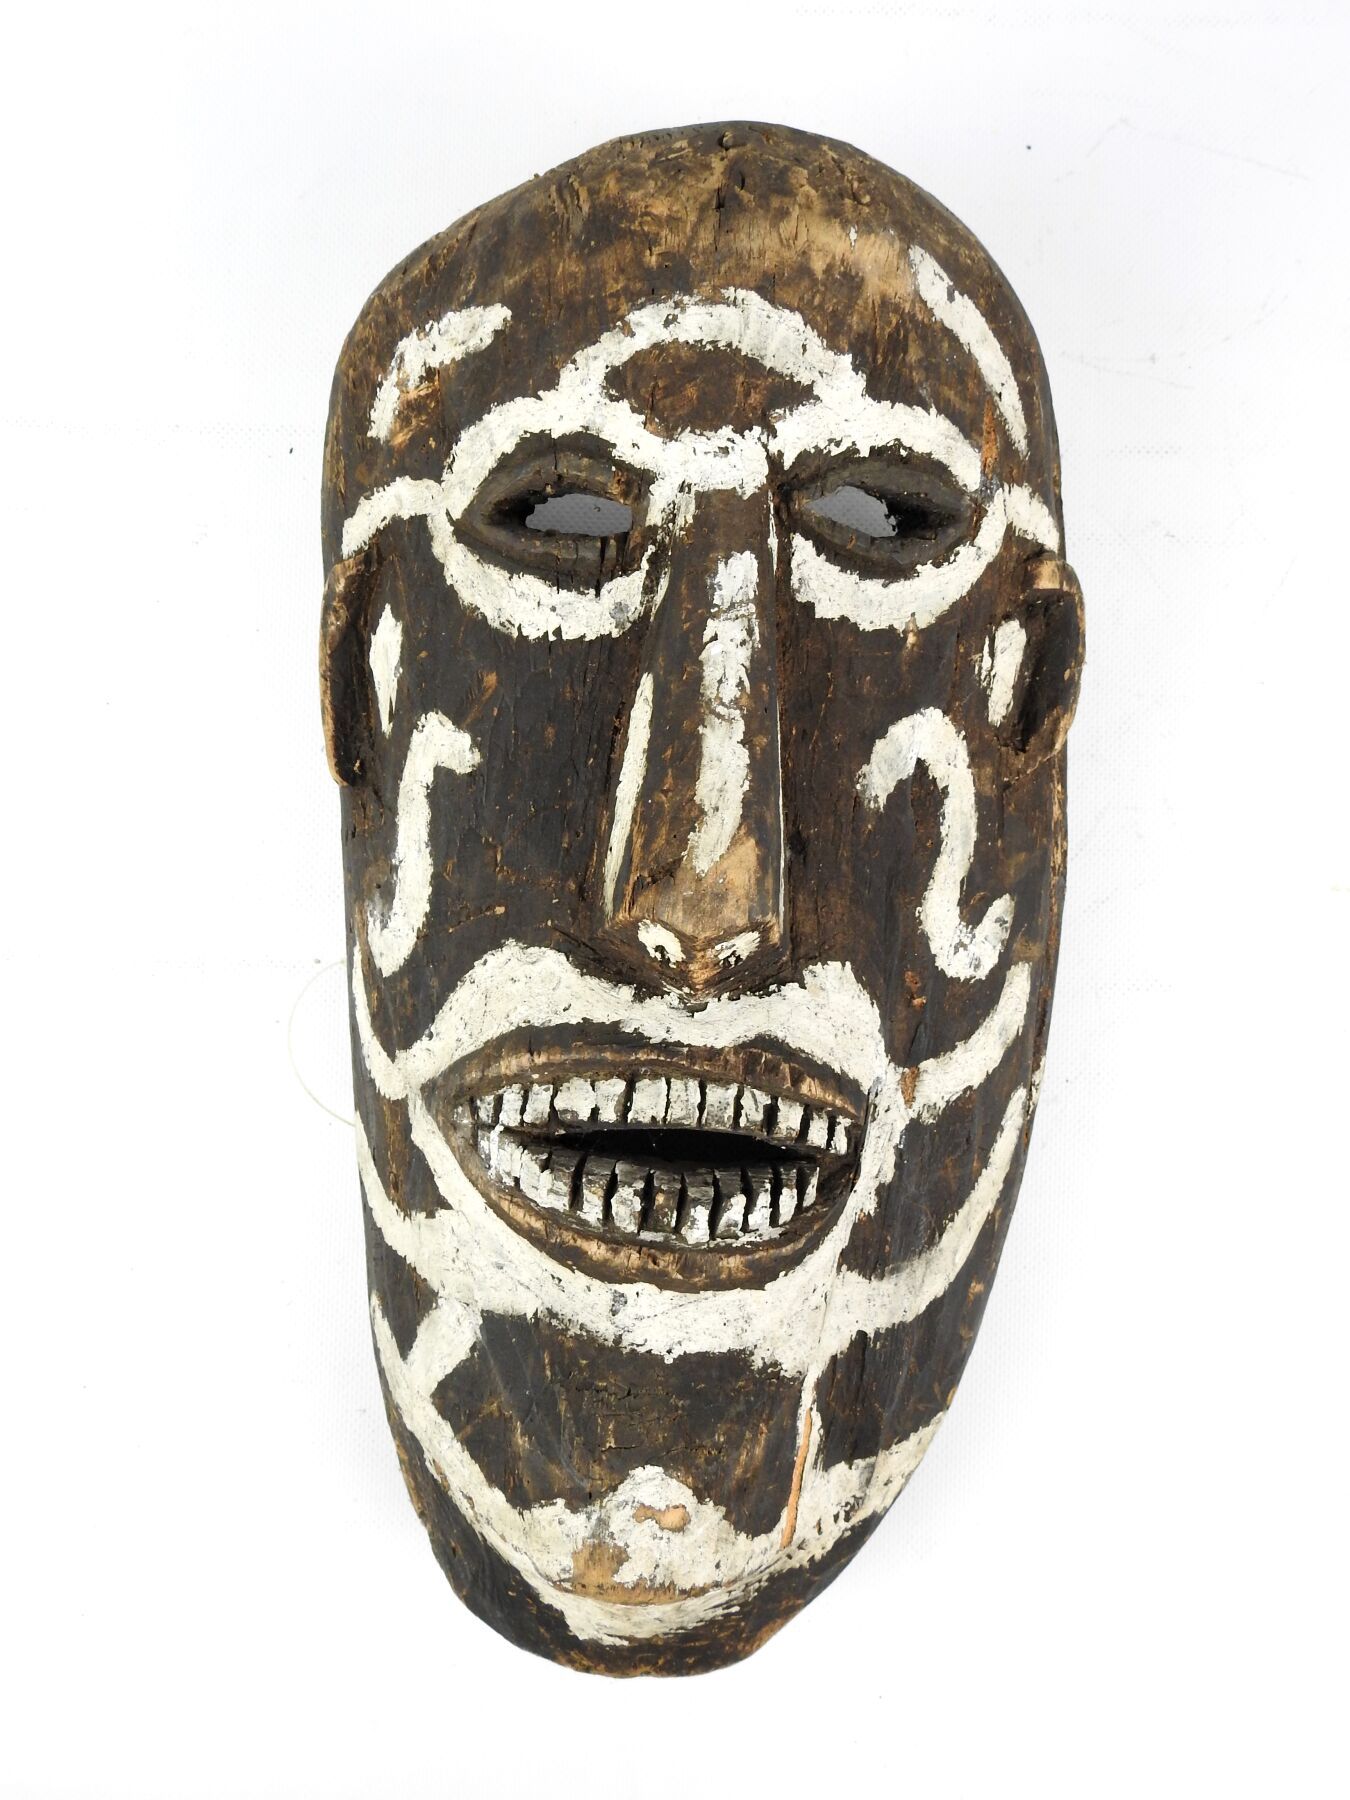 Null DAYAK IBAN，婆罗洲，印度尼西亚。
木头，有深色铜锈。
显示男性脸部装饰有白色痕迹的面具。
高度：45厘米。长度：41.5厘米。
小事故和丢失&hellip;